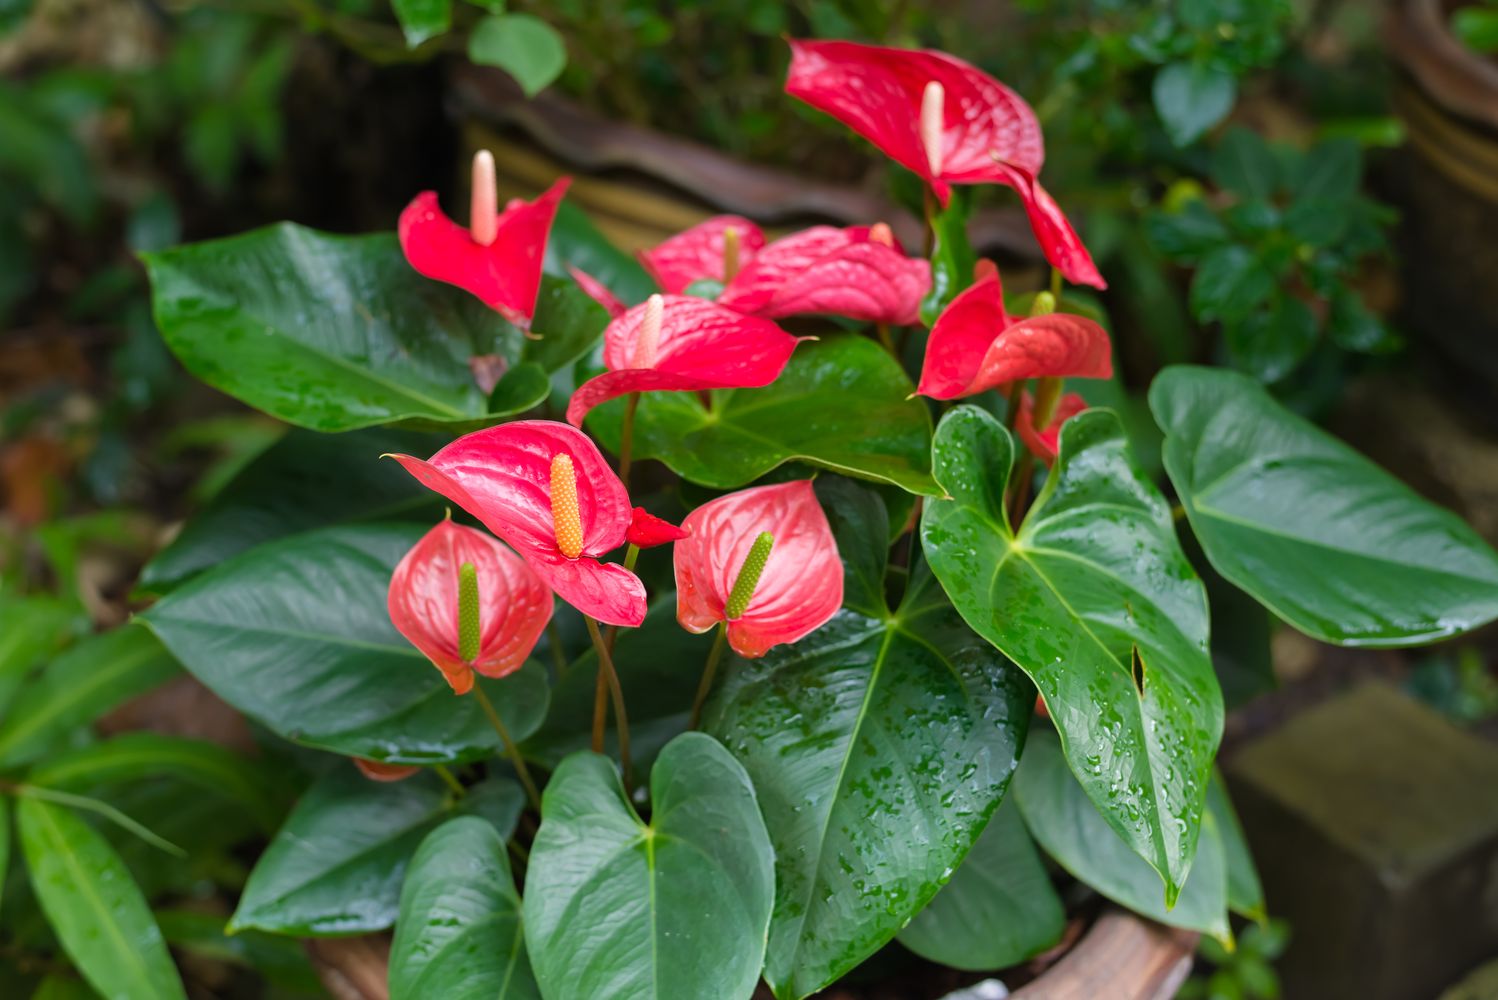 red anthurium plant